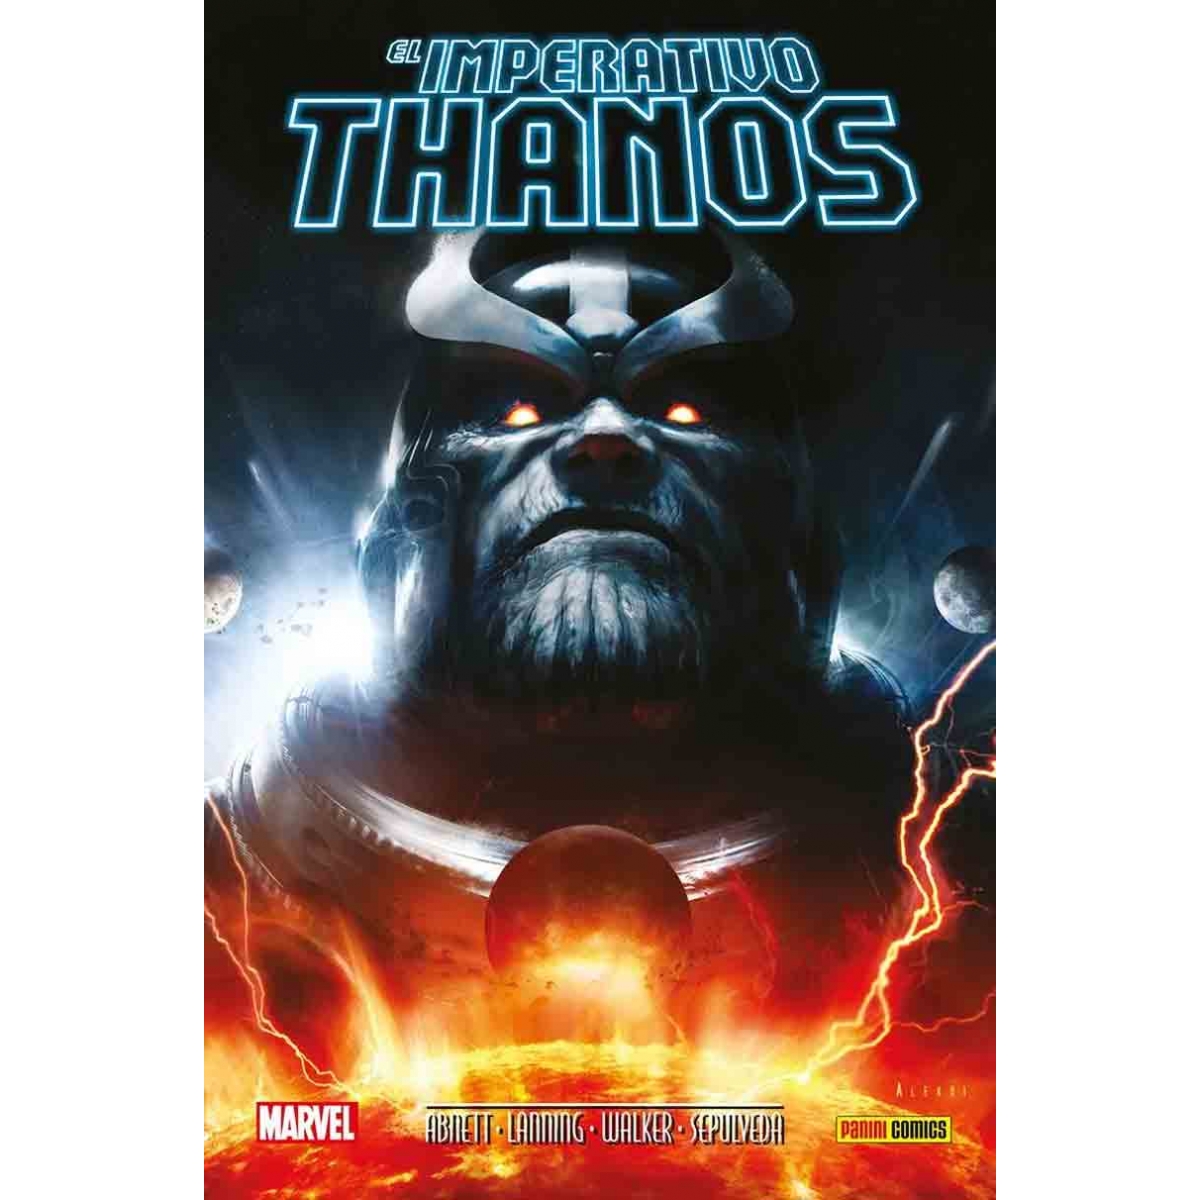 El Imperativo Thanos...